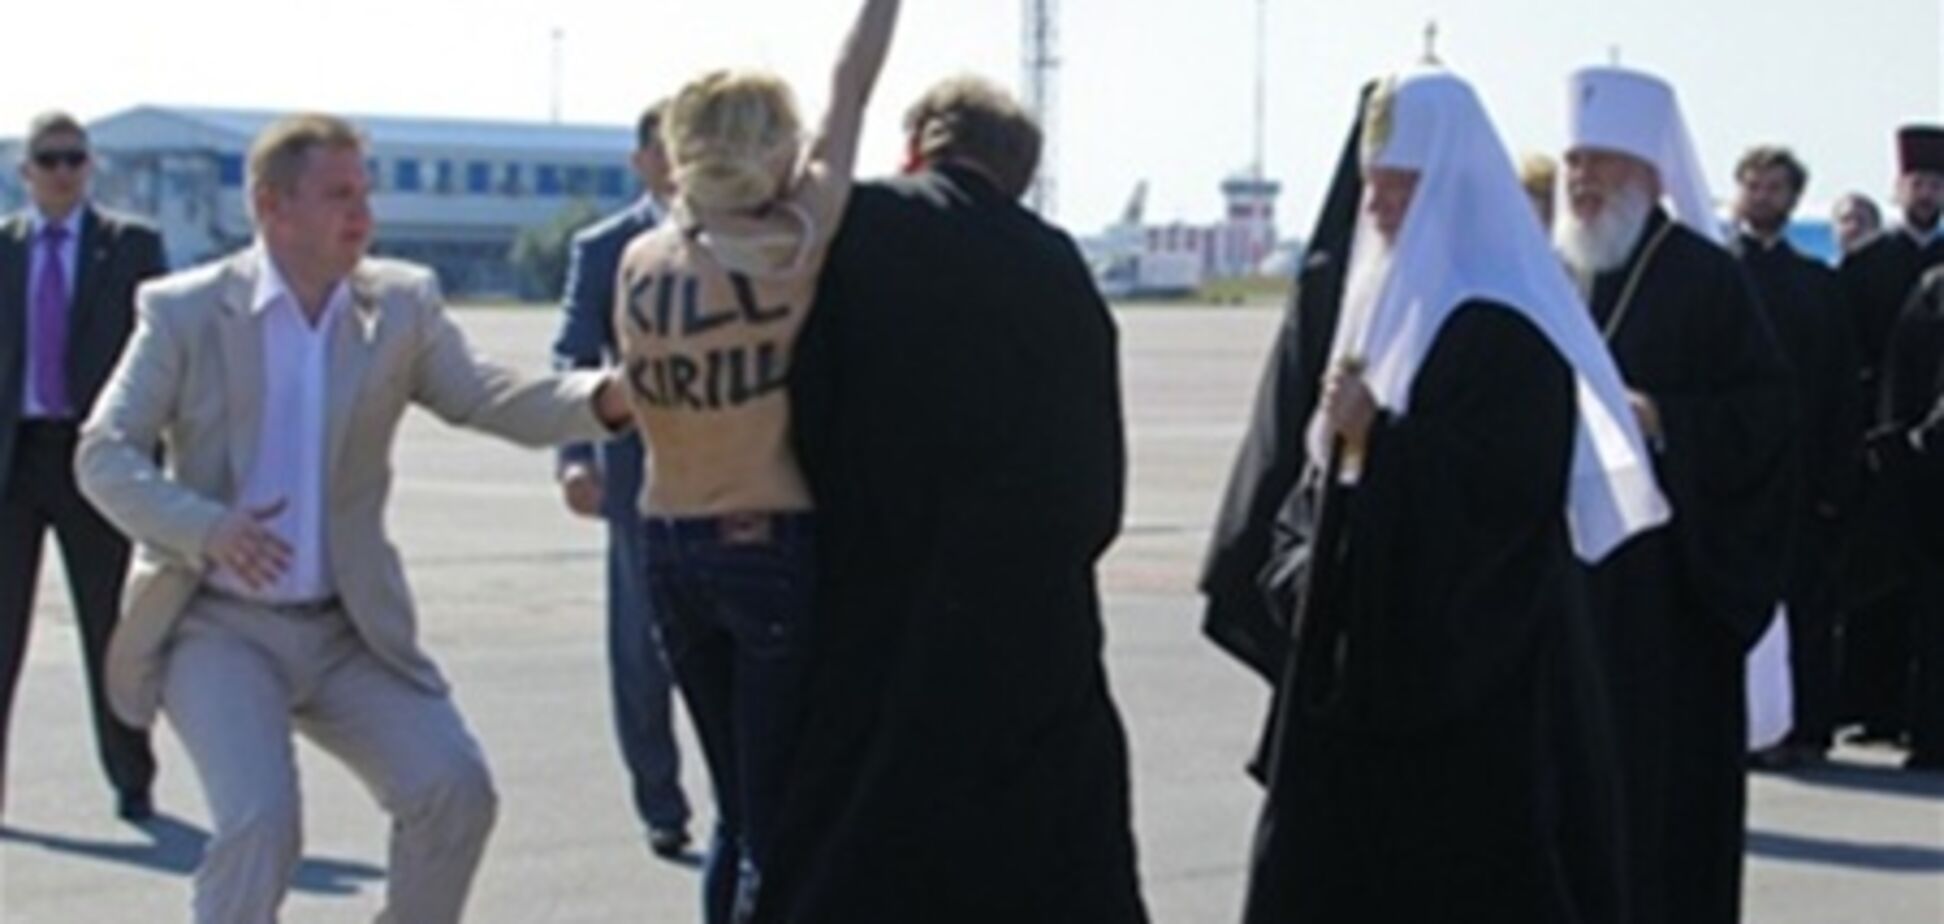 Активістці Femen, що напала на Кирила, загрожує 15 діб